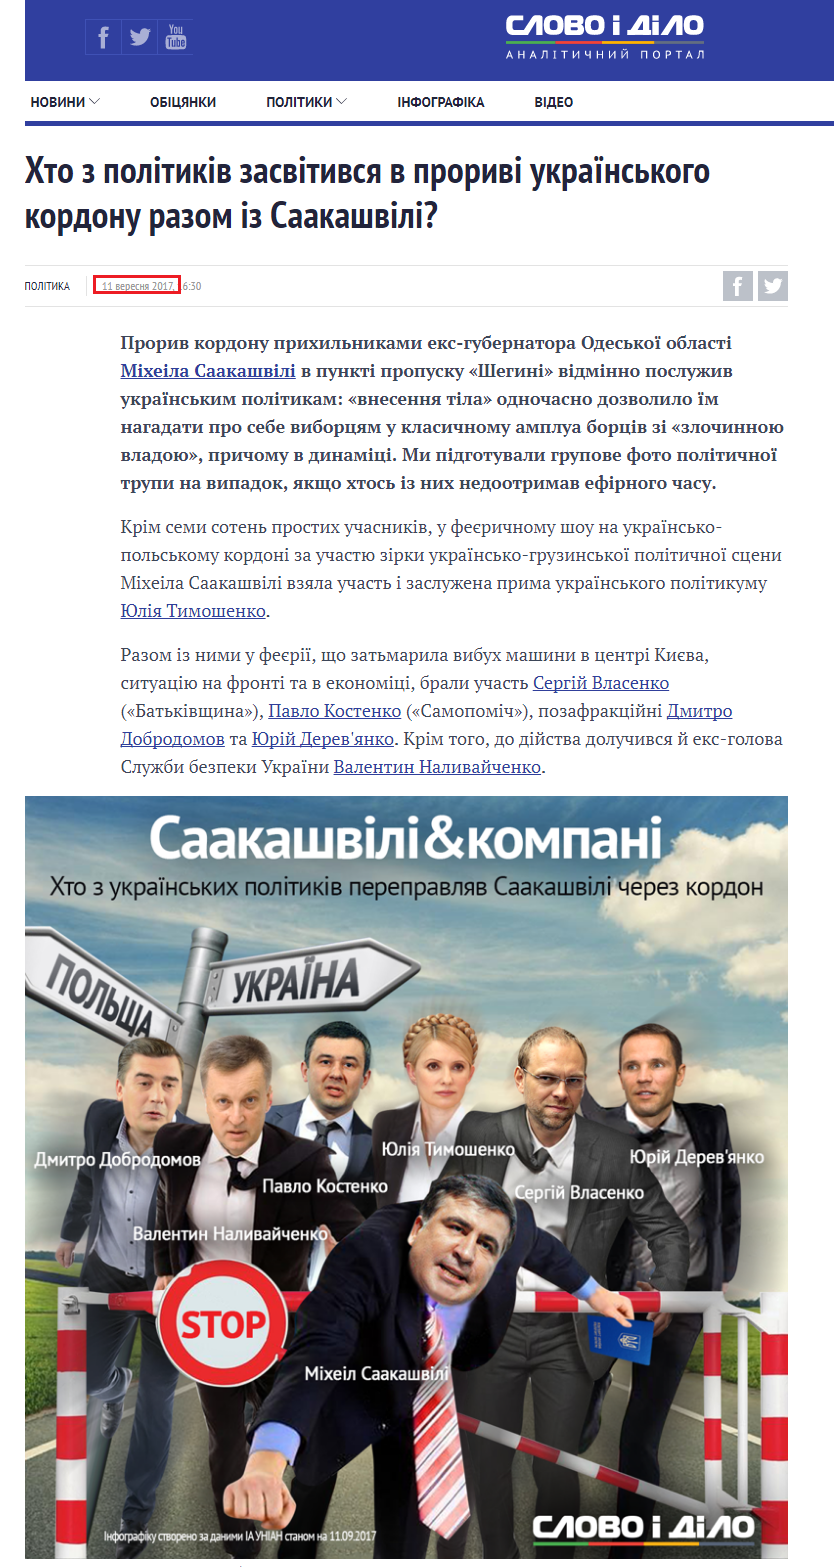 https://www.slovoidilo.ua/2017/09/11/infografika/polityka/xto-politykiv-zasvityvsya-proryvi-ukrayinskoho-kordonu-saakashvili